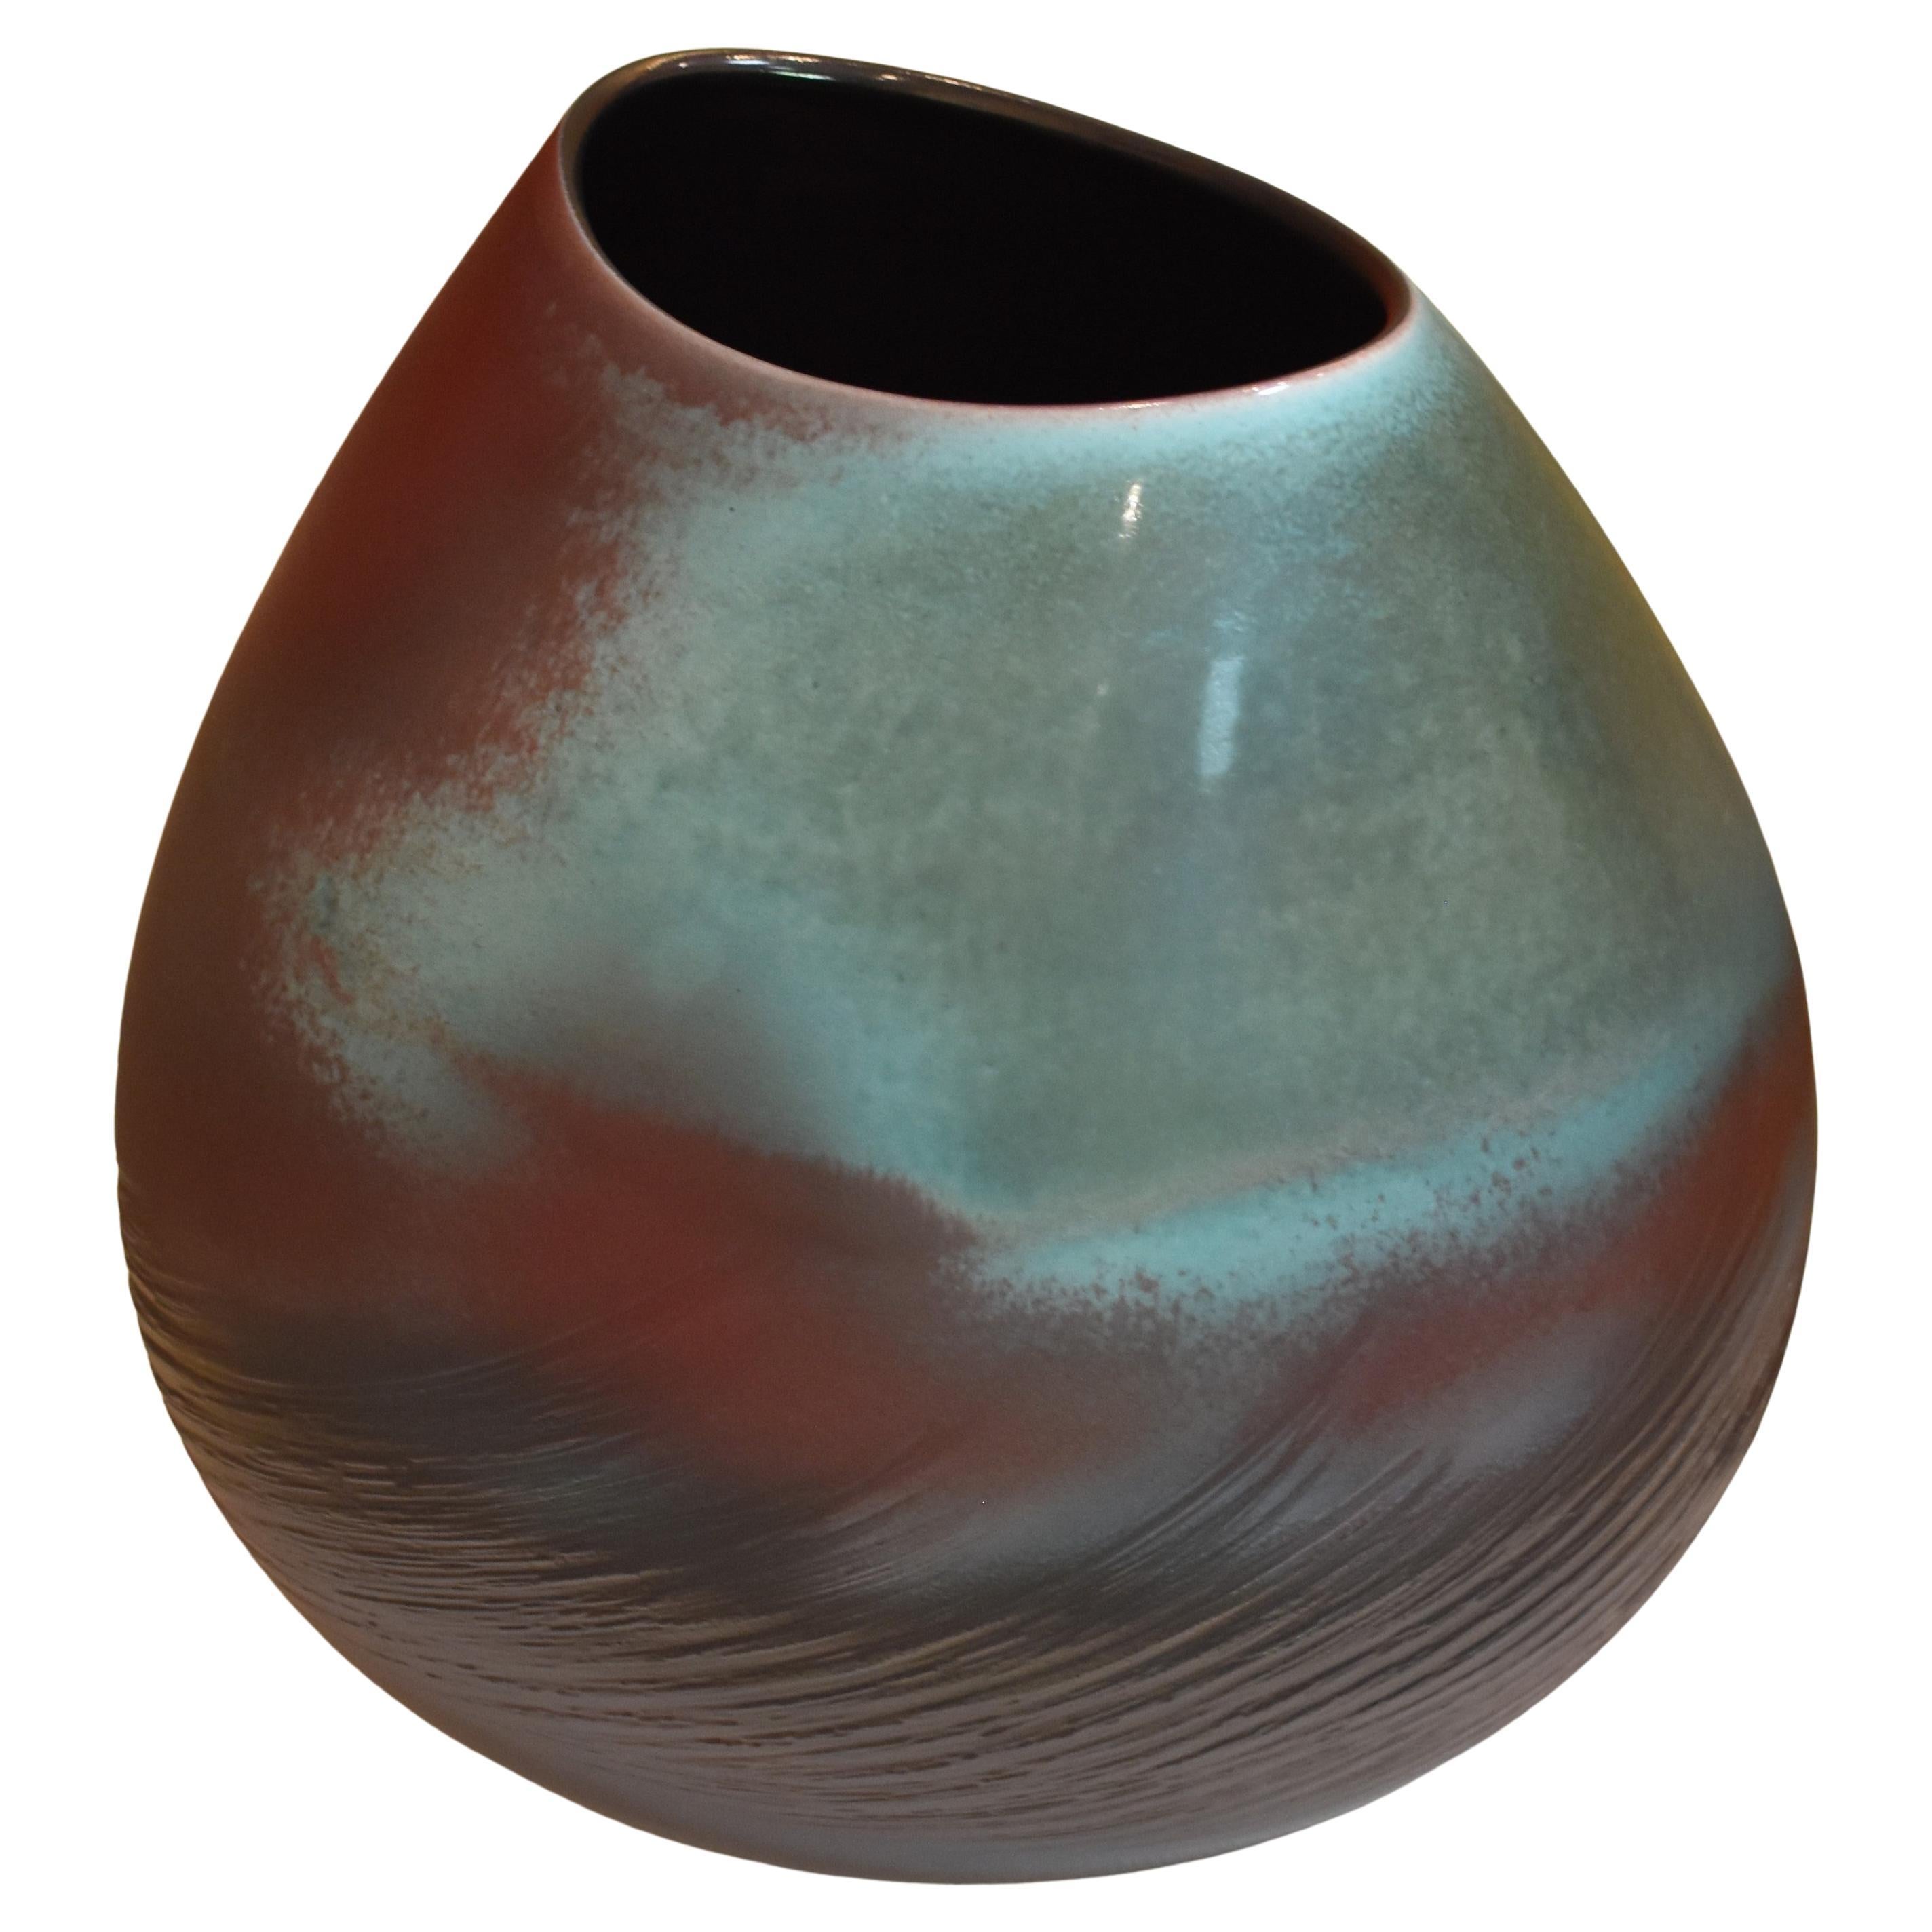 Vase japonais contemporain en porcelaine marron et bleue émaillée à la main par un maître artiste, 2